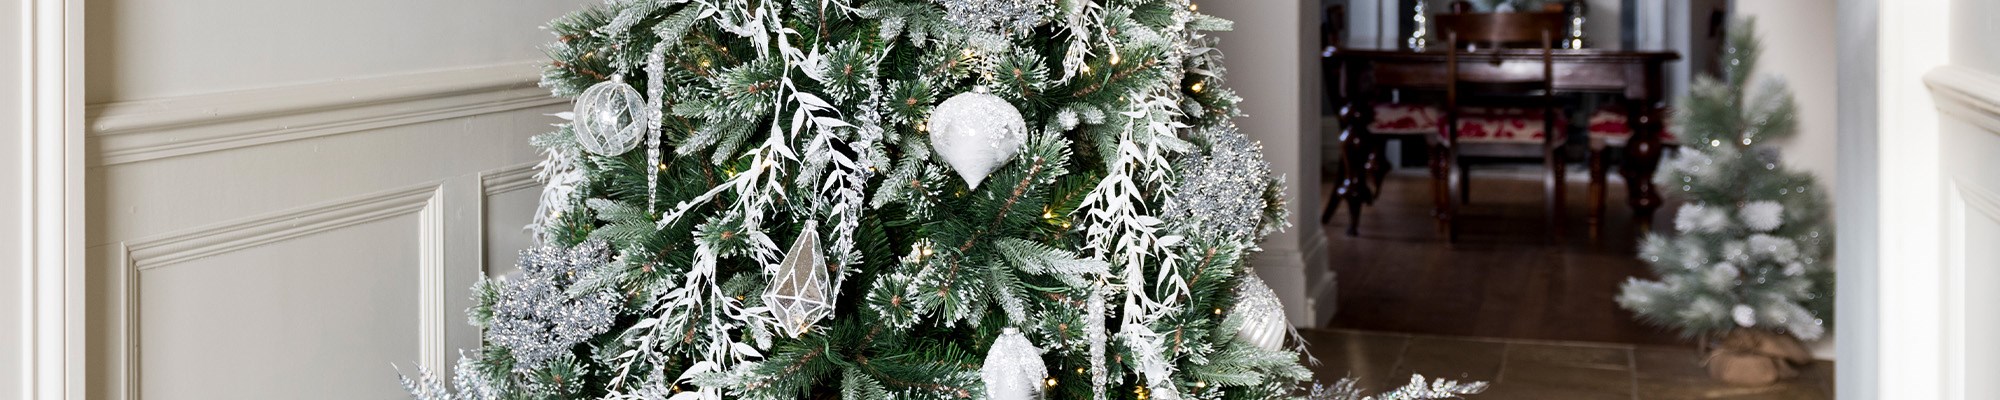 Traditional Christmas Trees